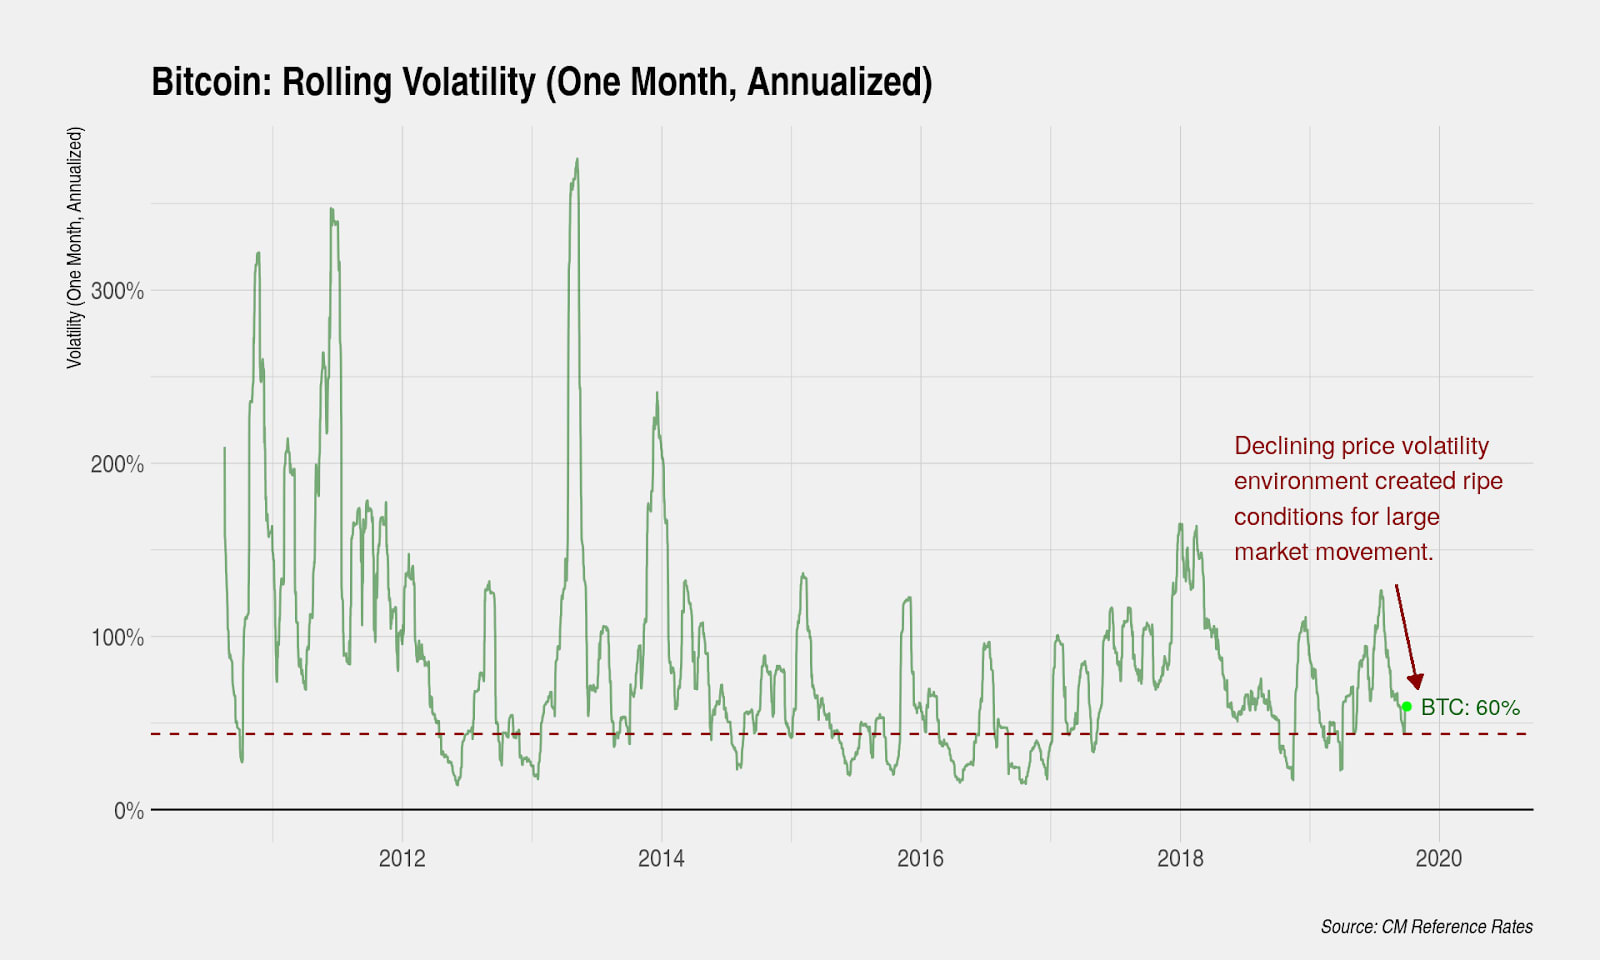 Bitcoin volatility increasing